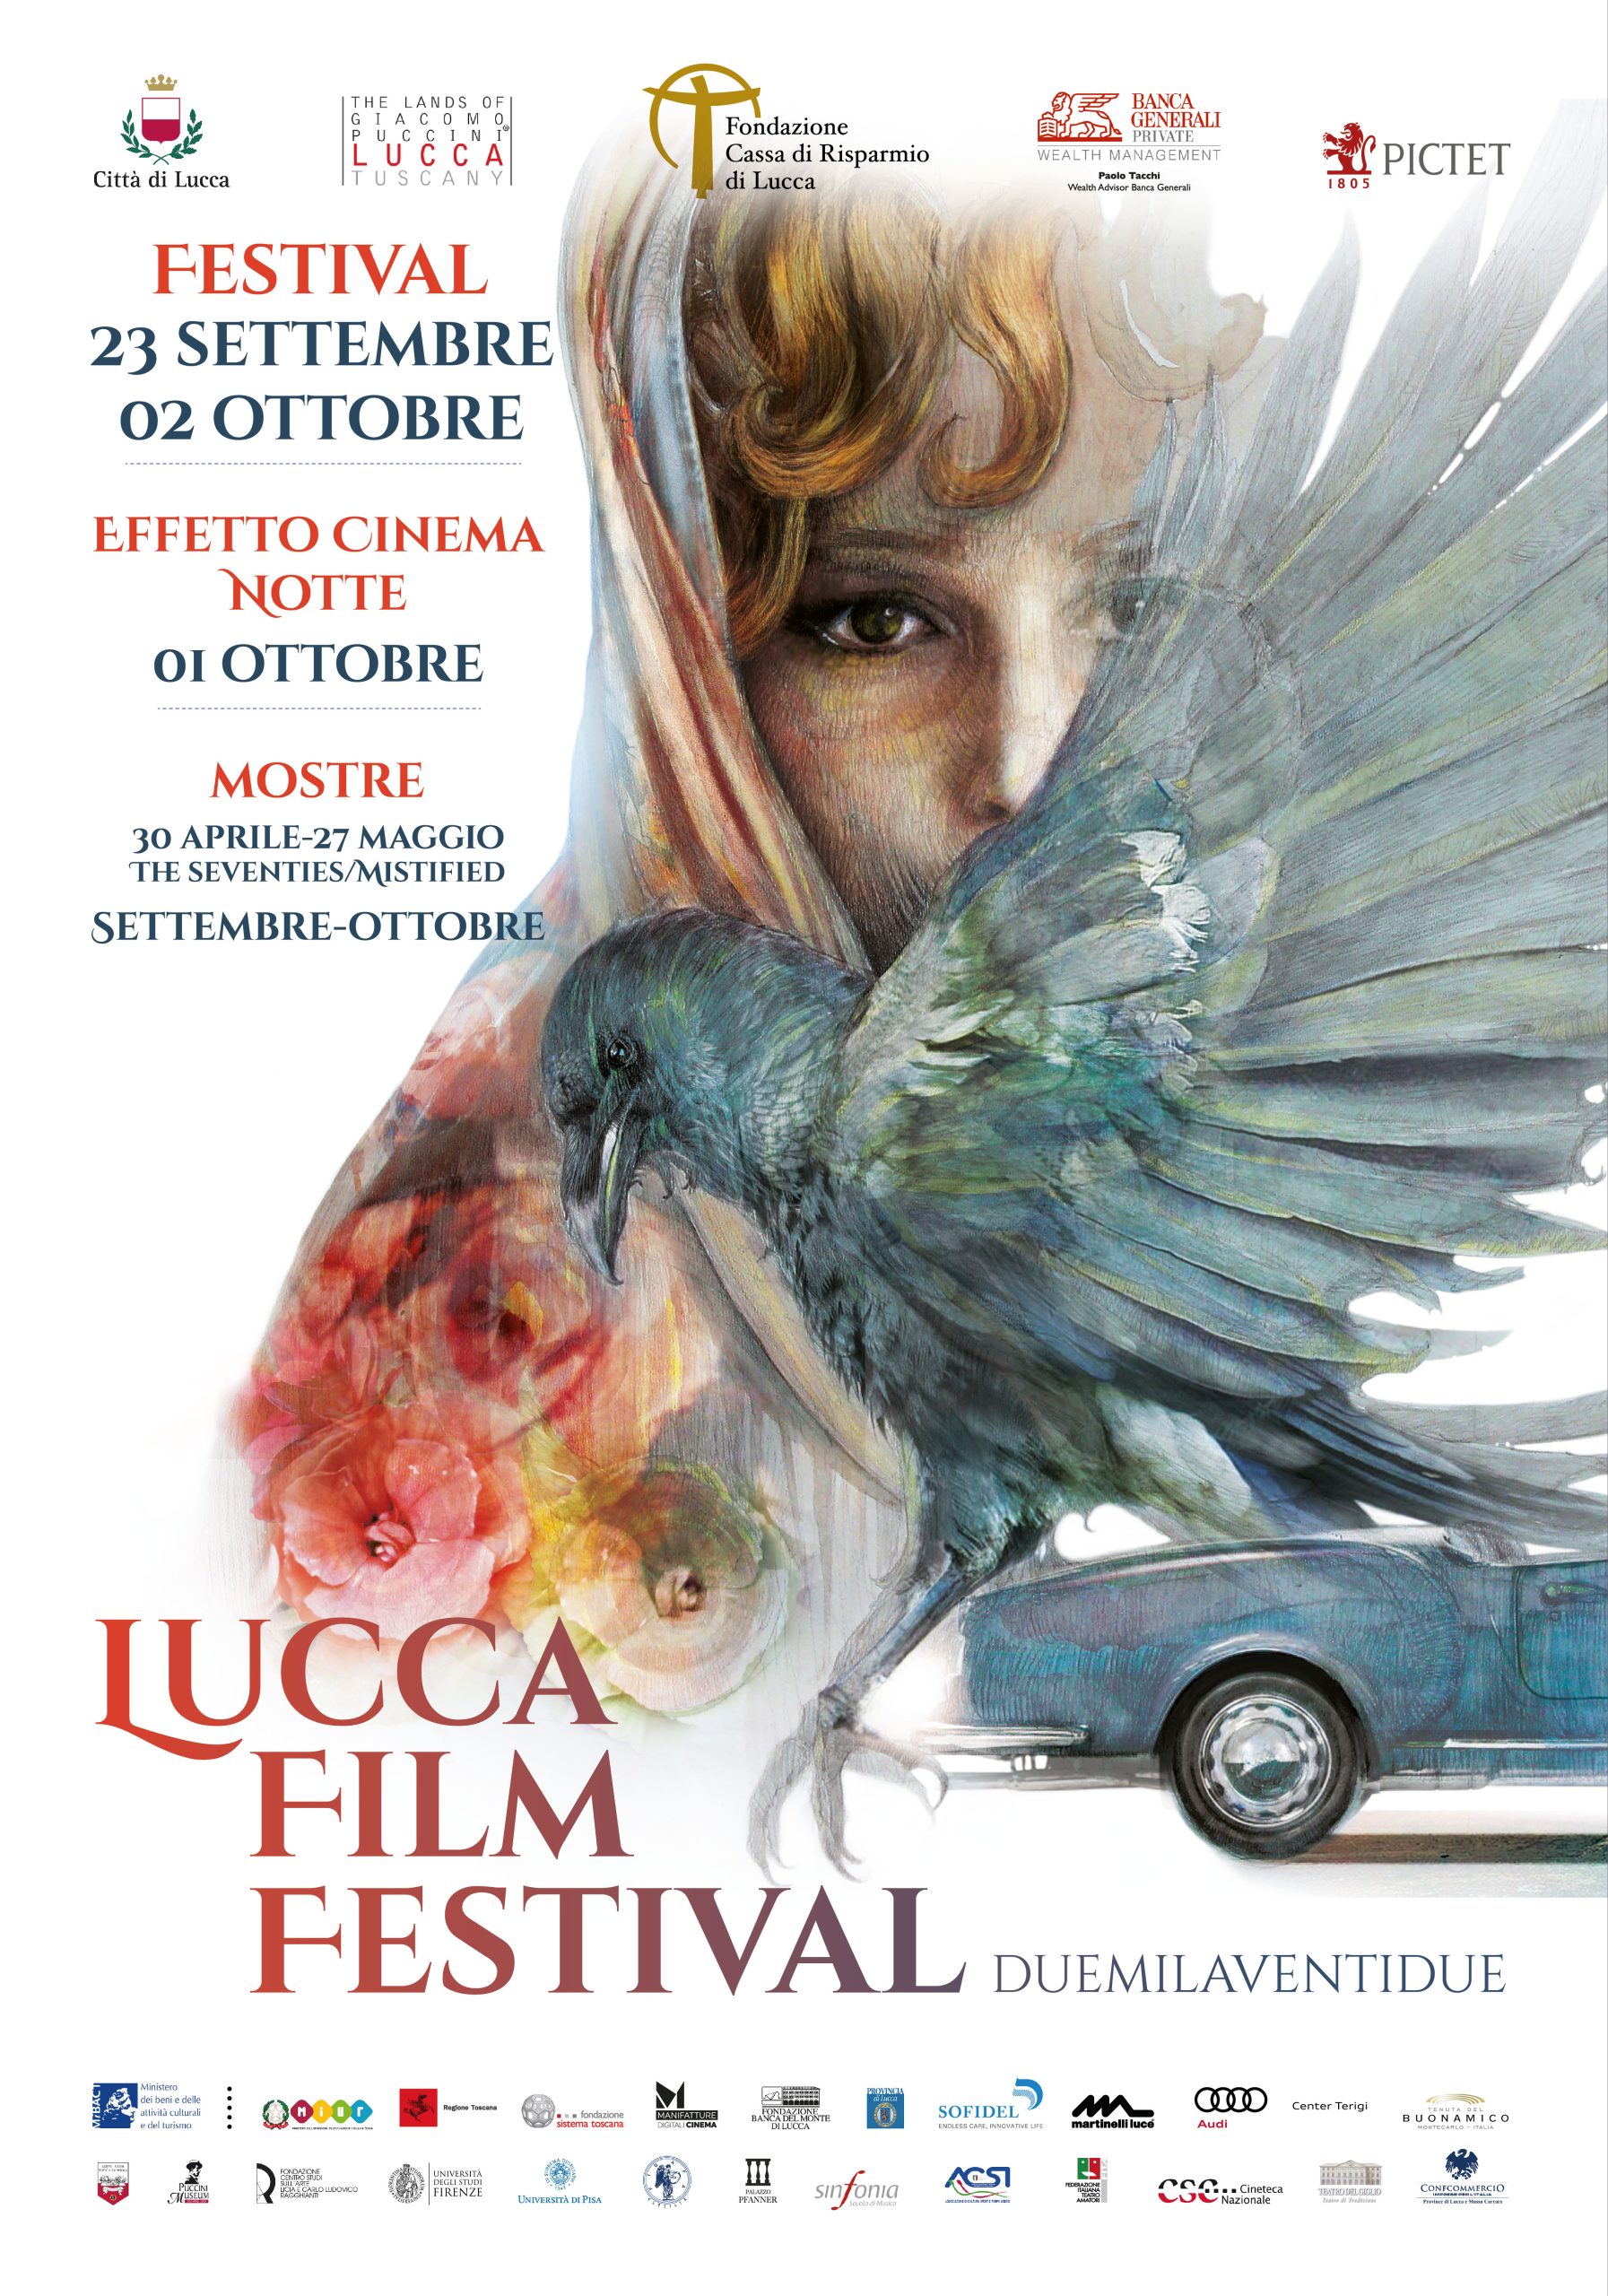 Lucca Film Festival: dal 23 settembre al 2 Ottobre lungometraggi, corti, ospiti internazionali, mostre, musica e incontri